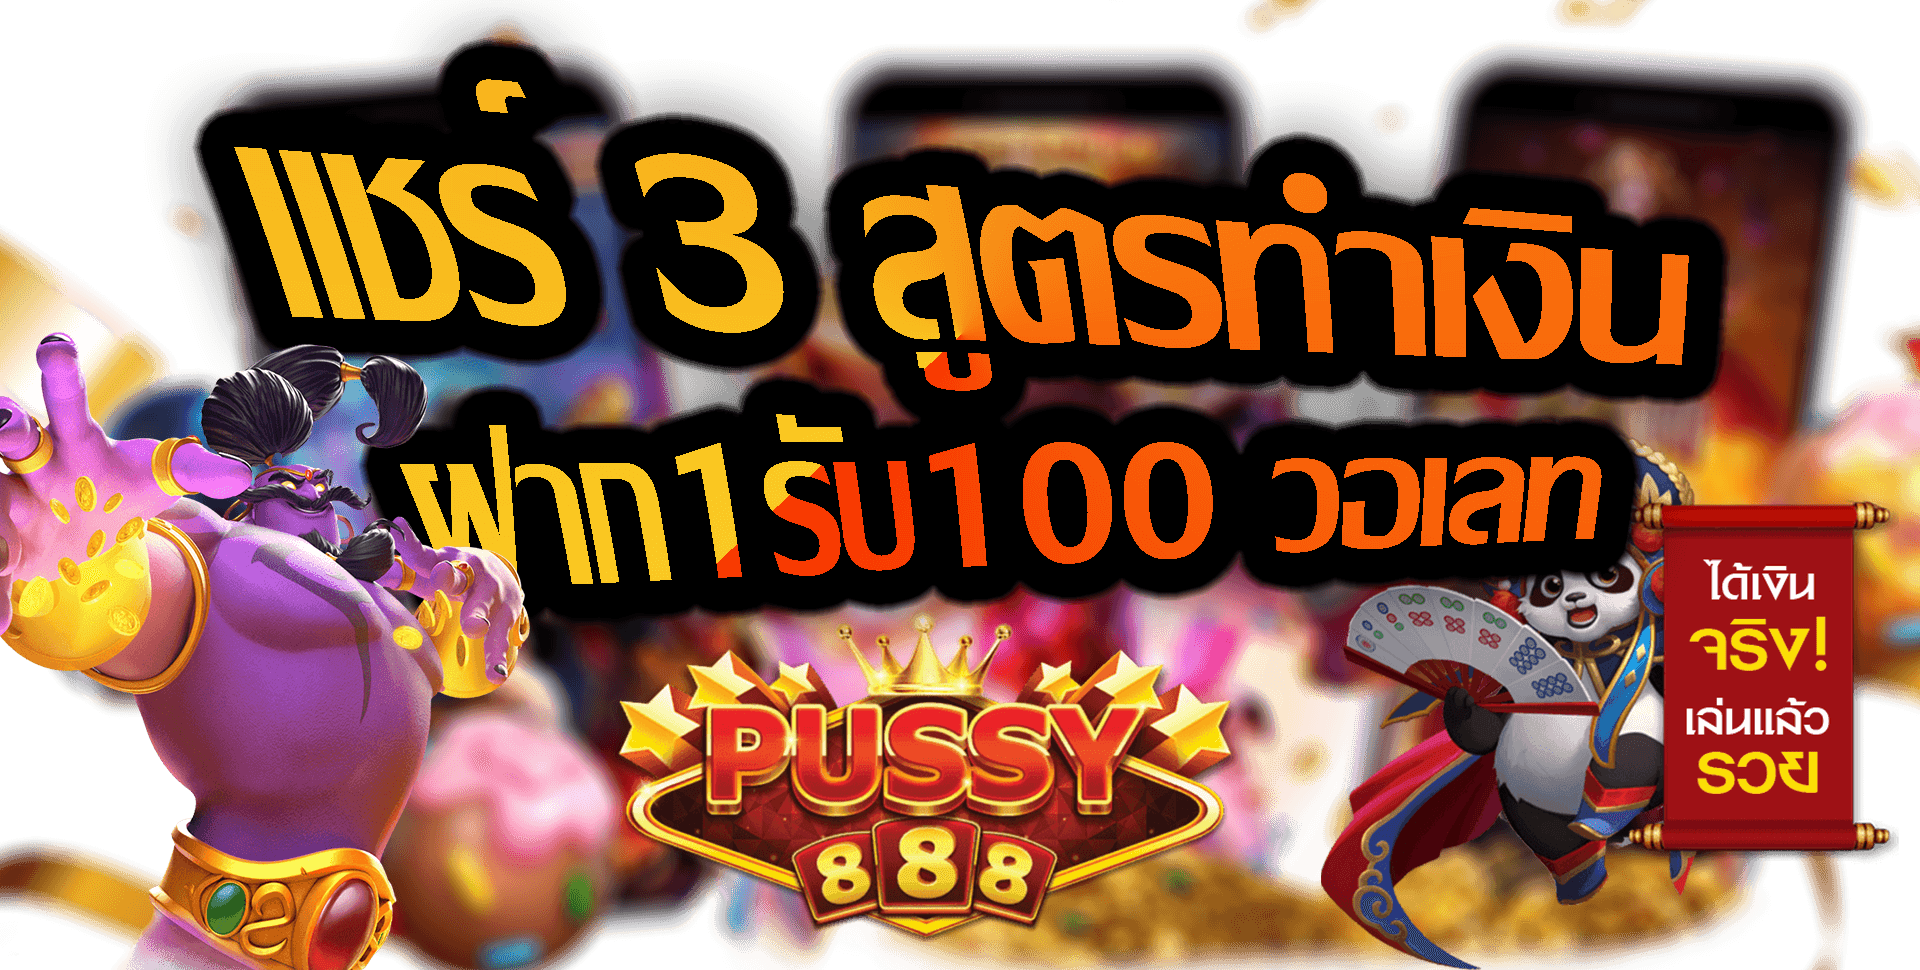 Pussy888-2022-ฝาก1รับ100 วอเลท-Puss888